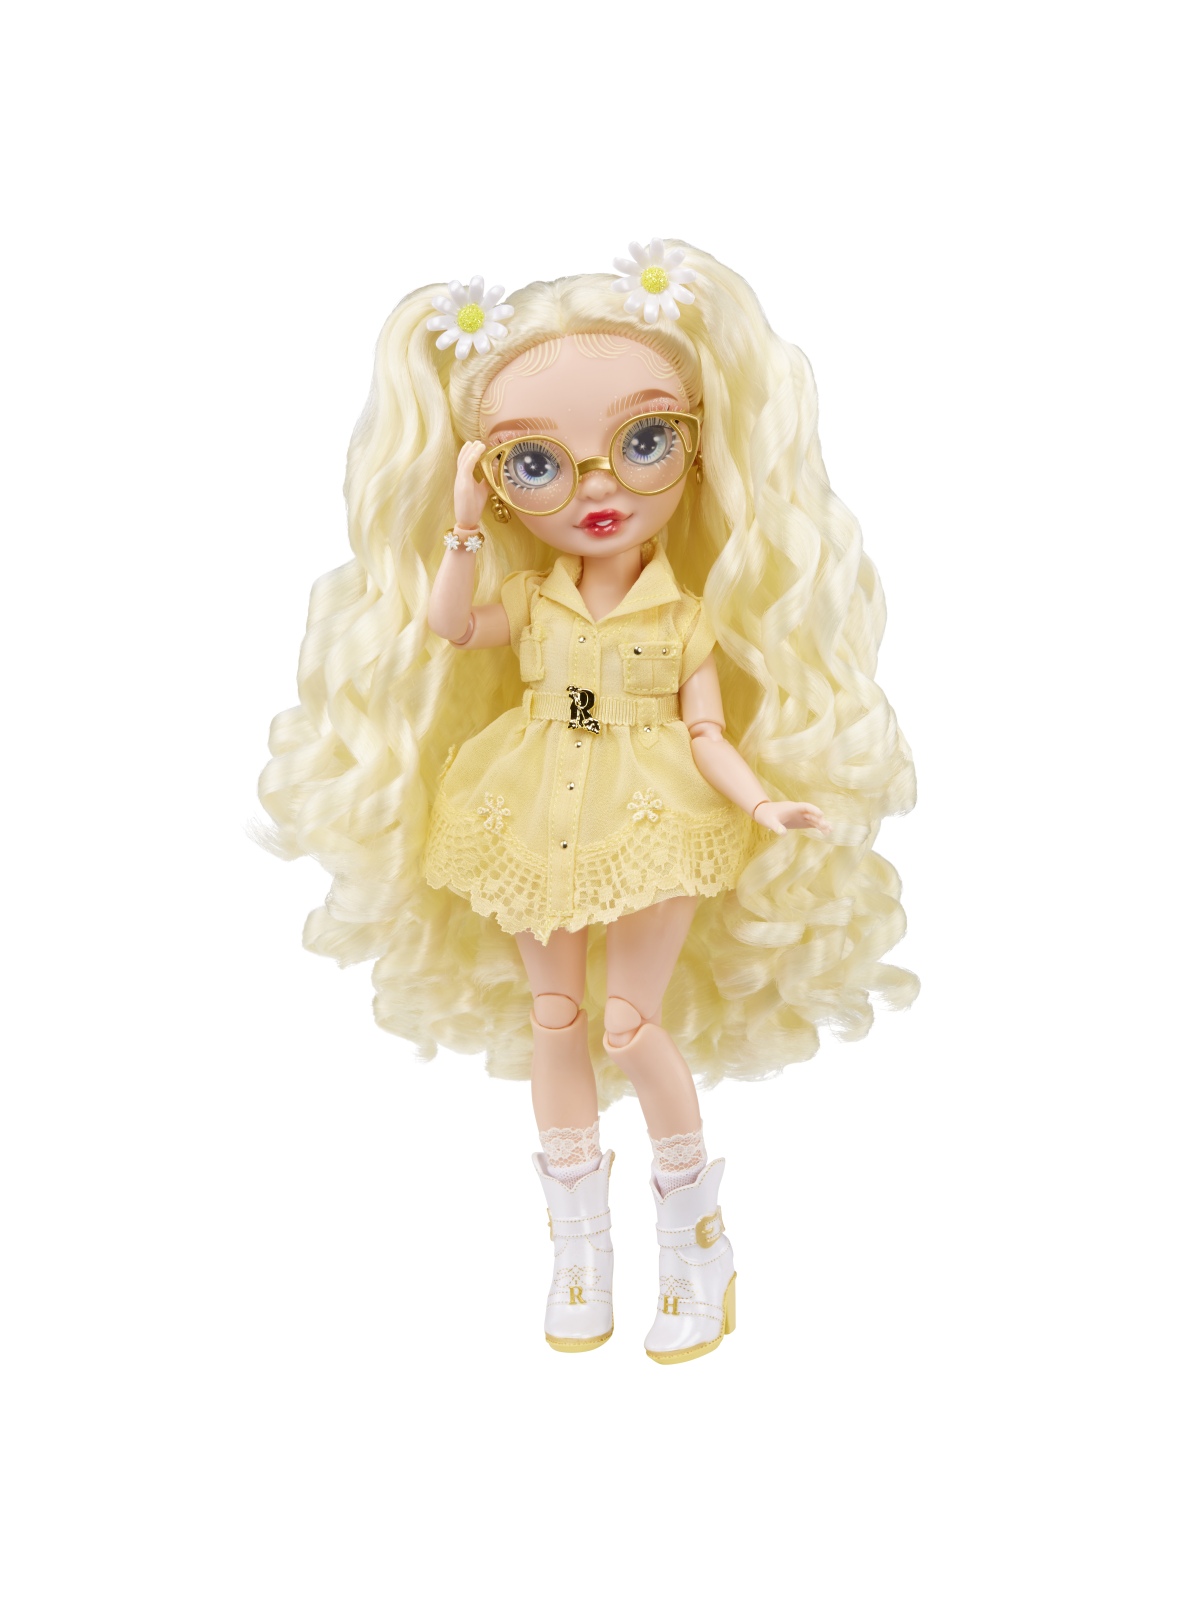 Rainbow high -  delilah fields - bambola alla moda color giallo - con albinismo e occhiali - include 2 abiti mix & match con accessori - Rainbow High